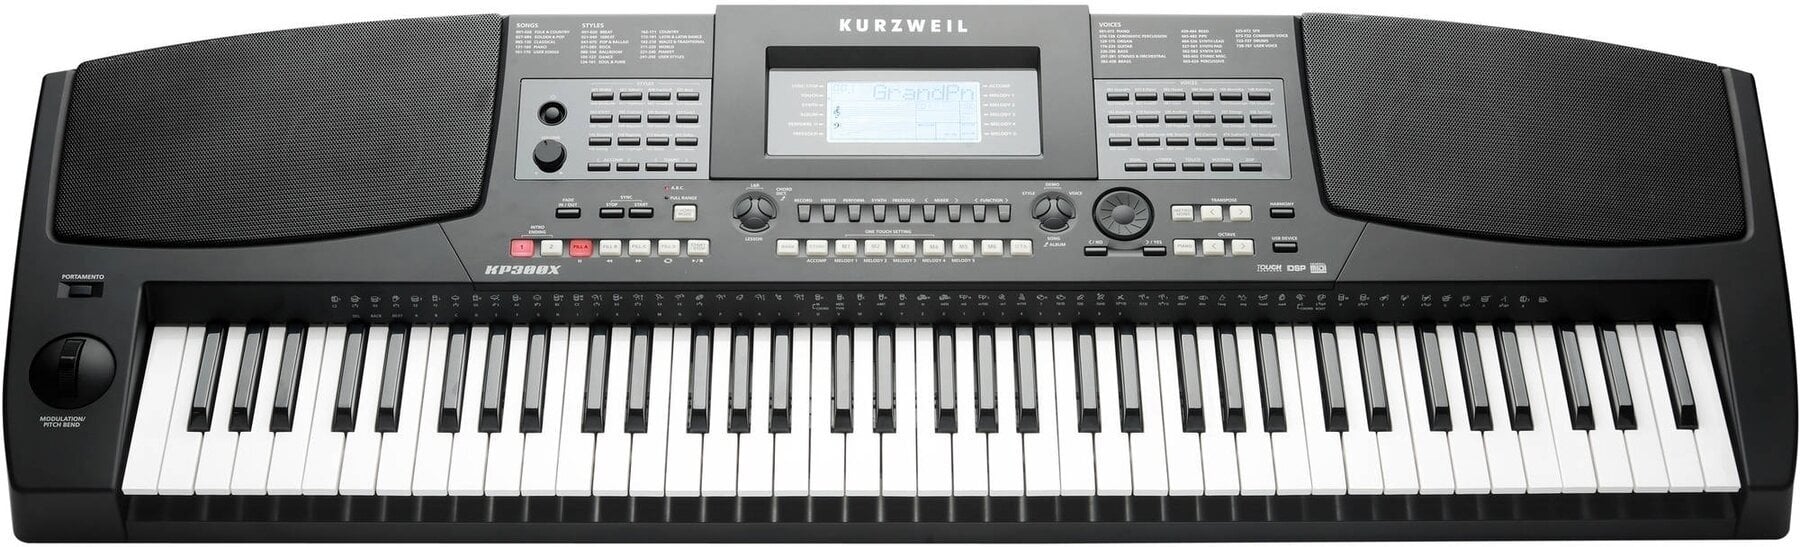 Keyboard z dinamiko Kurzweil KP300X